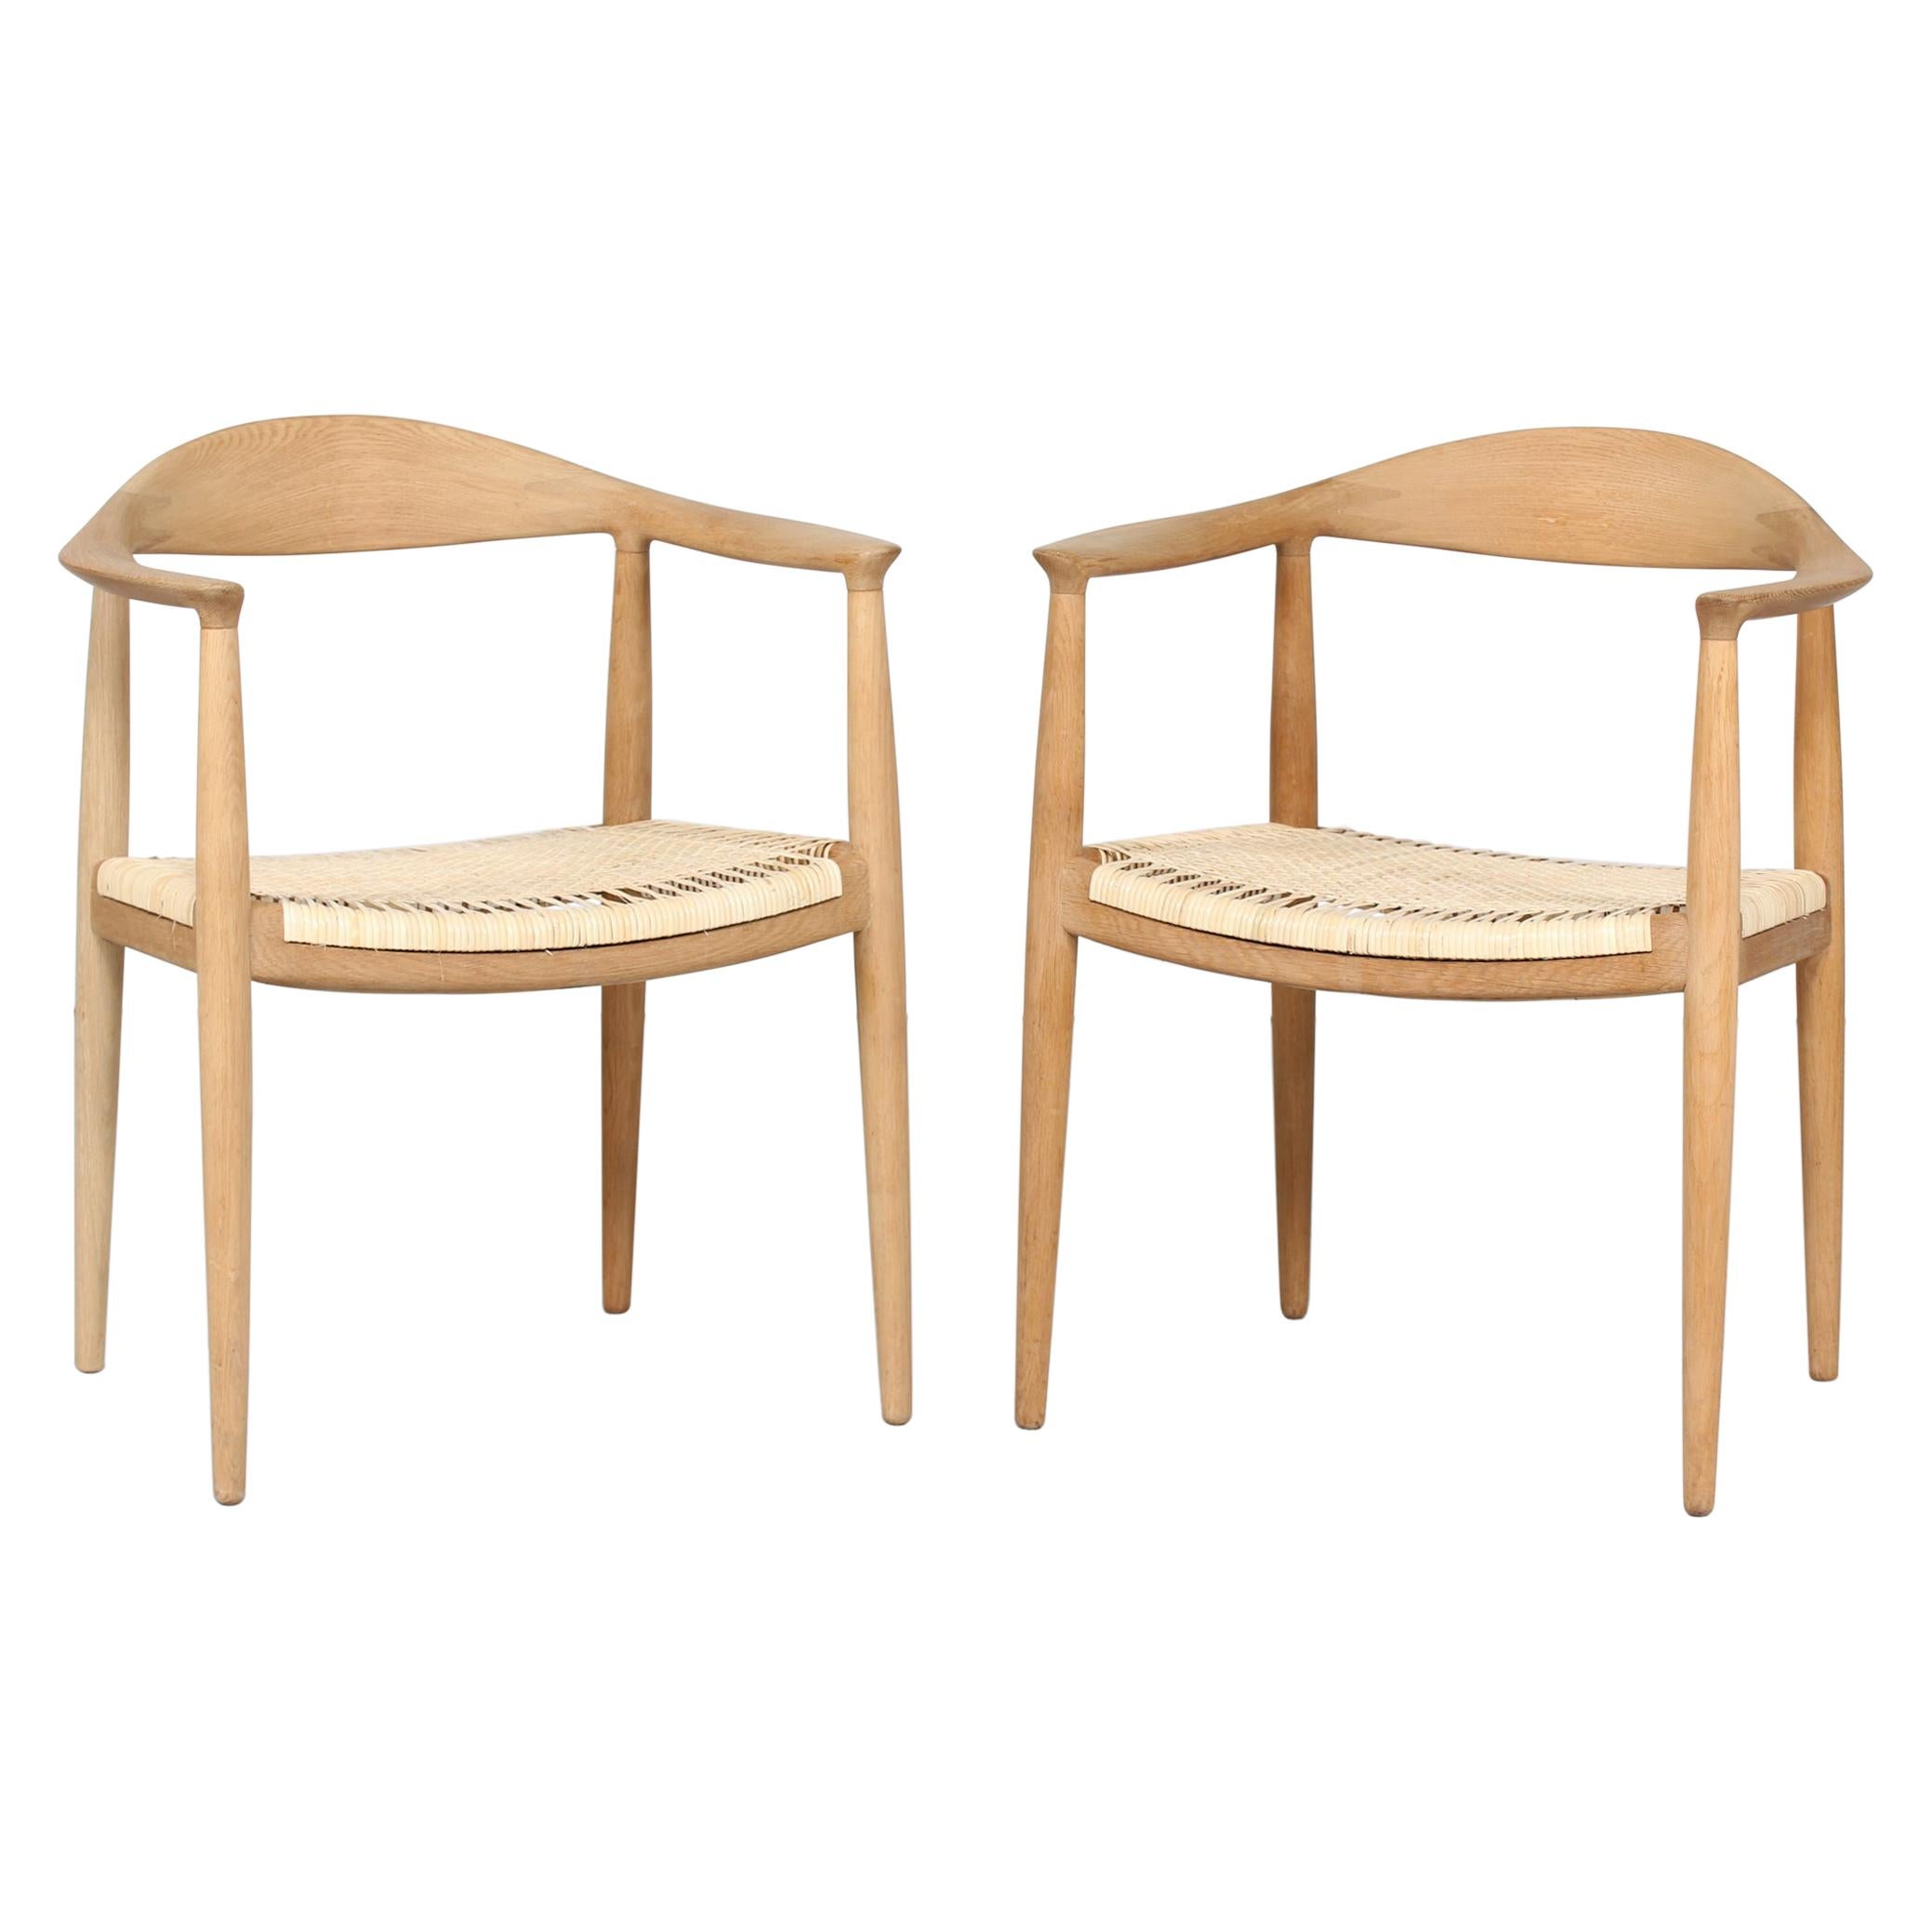 Paire de chaises de Hans J Wegner 503 en chêne et en rotin fabriquées par Johannes Hansen:: années 1960